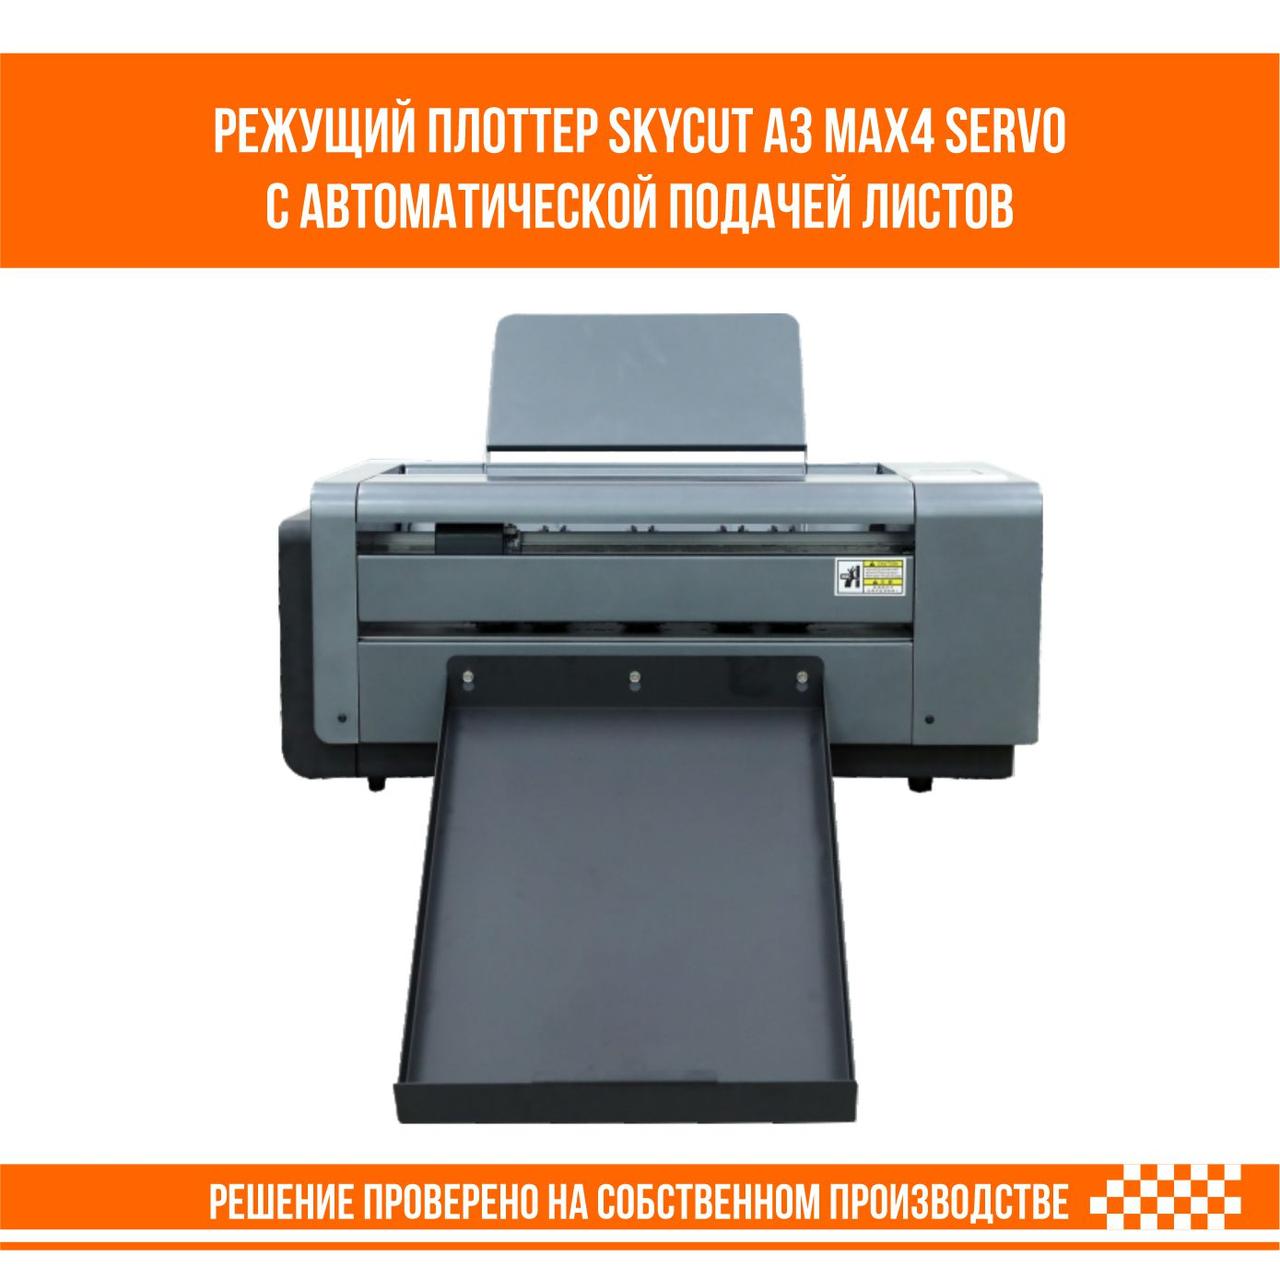 Режущий плоттер SkyCut A3 MAX4 SERVO с автоматической подачей листов формат SRА3